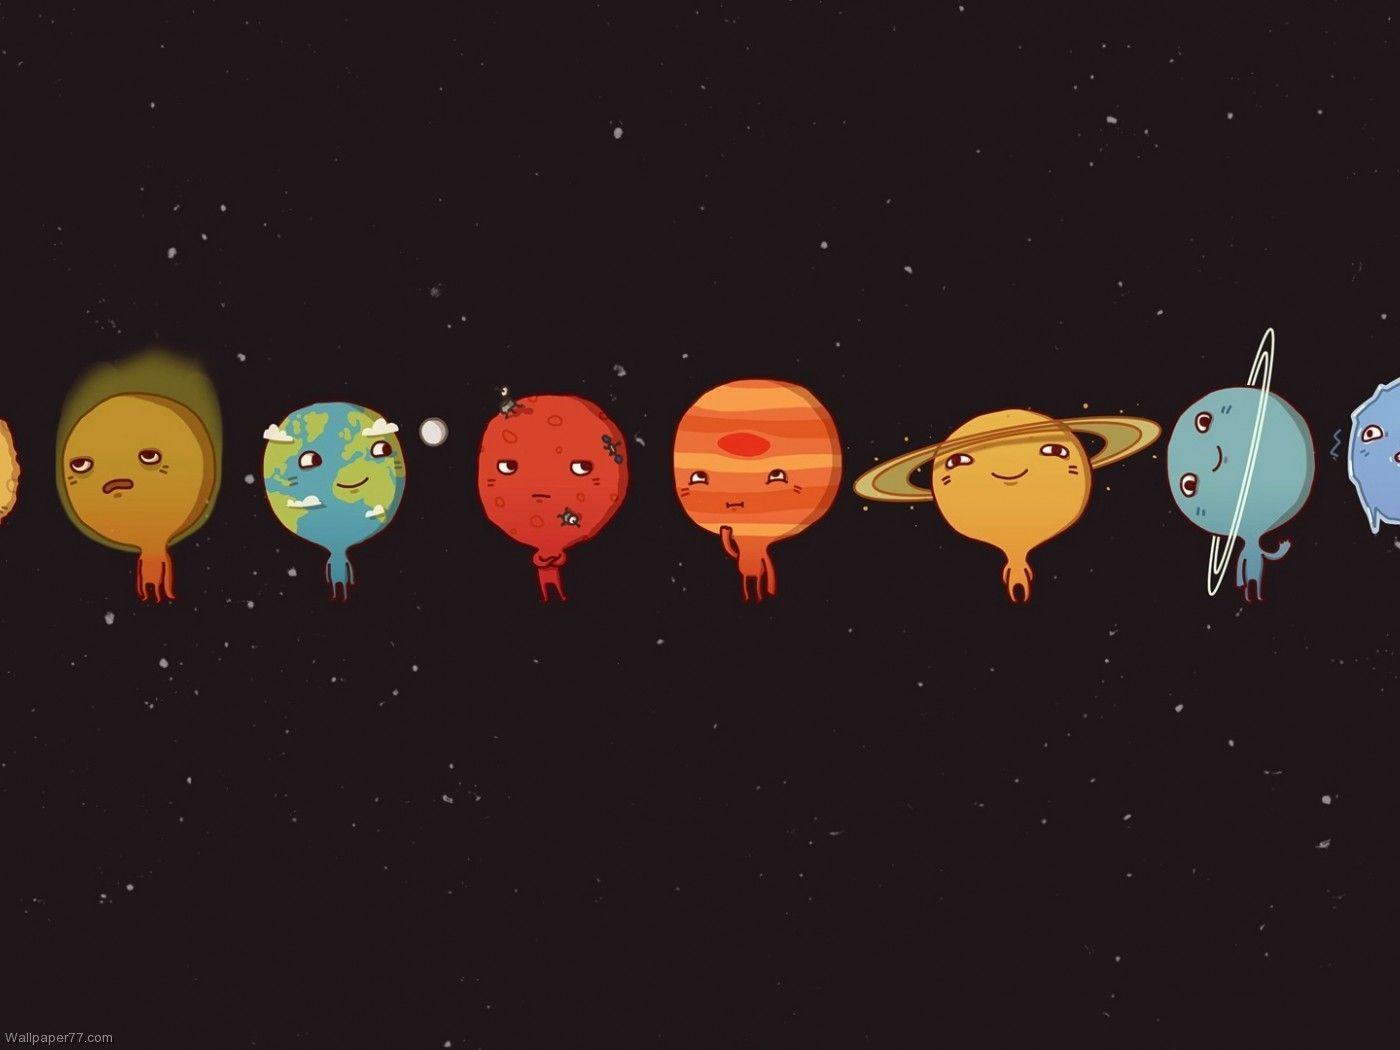 solar system, 1400x1050 pixels, Wallpaper tagged Cute, Fun